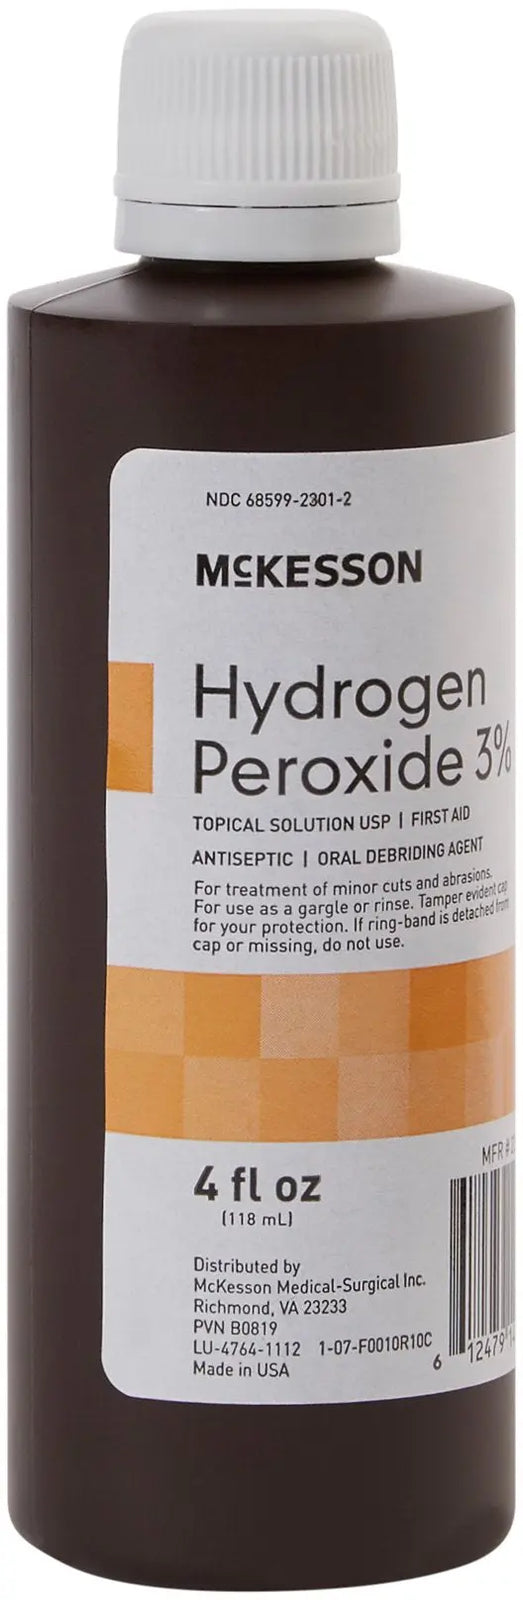 McKesson Hydrogen Peroxide 3% First Aid Antiseptic - 16 fl oz